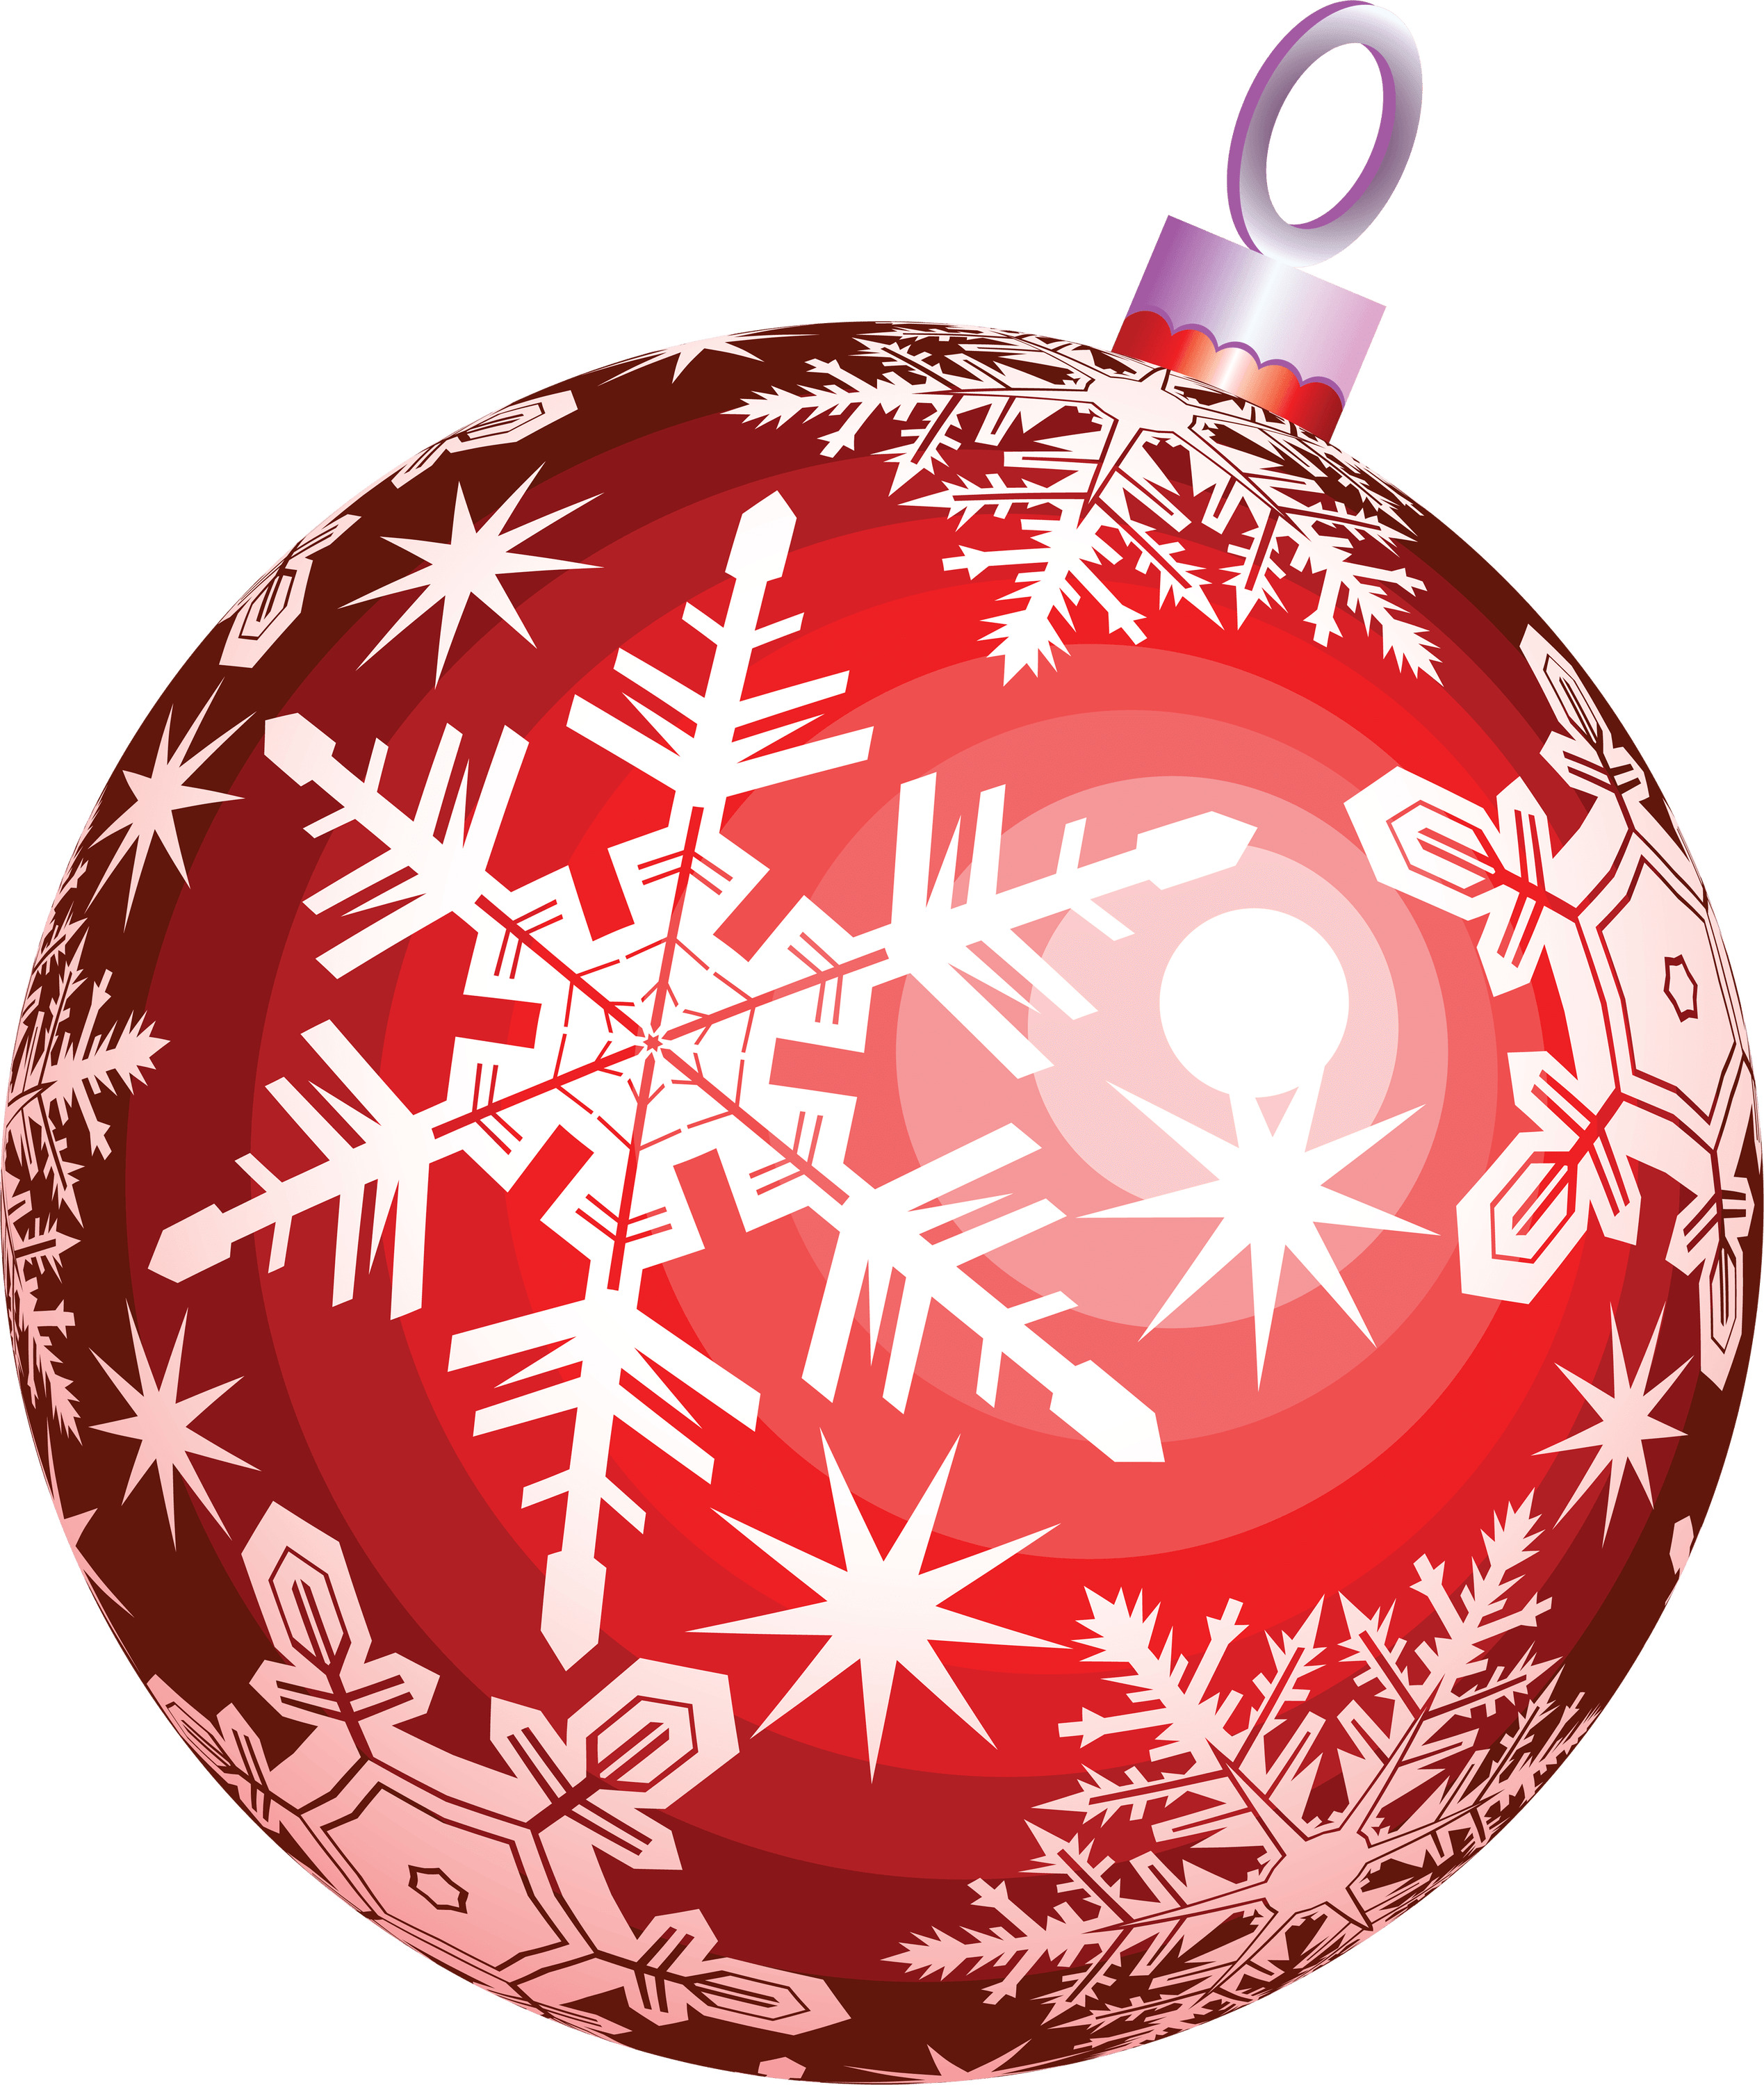 Red Ball Christmas icons